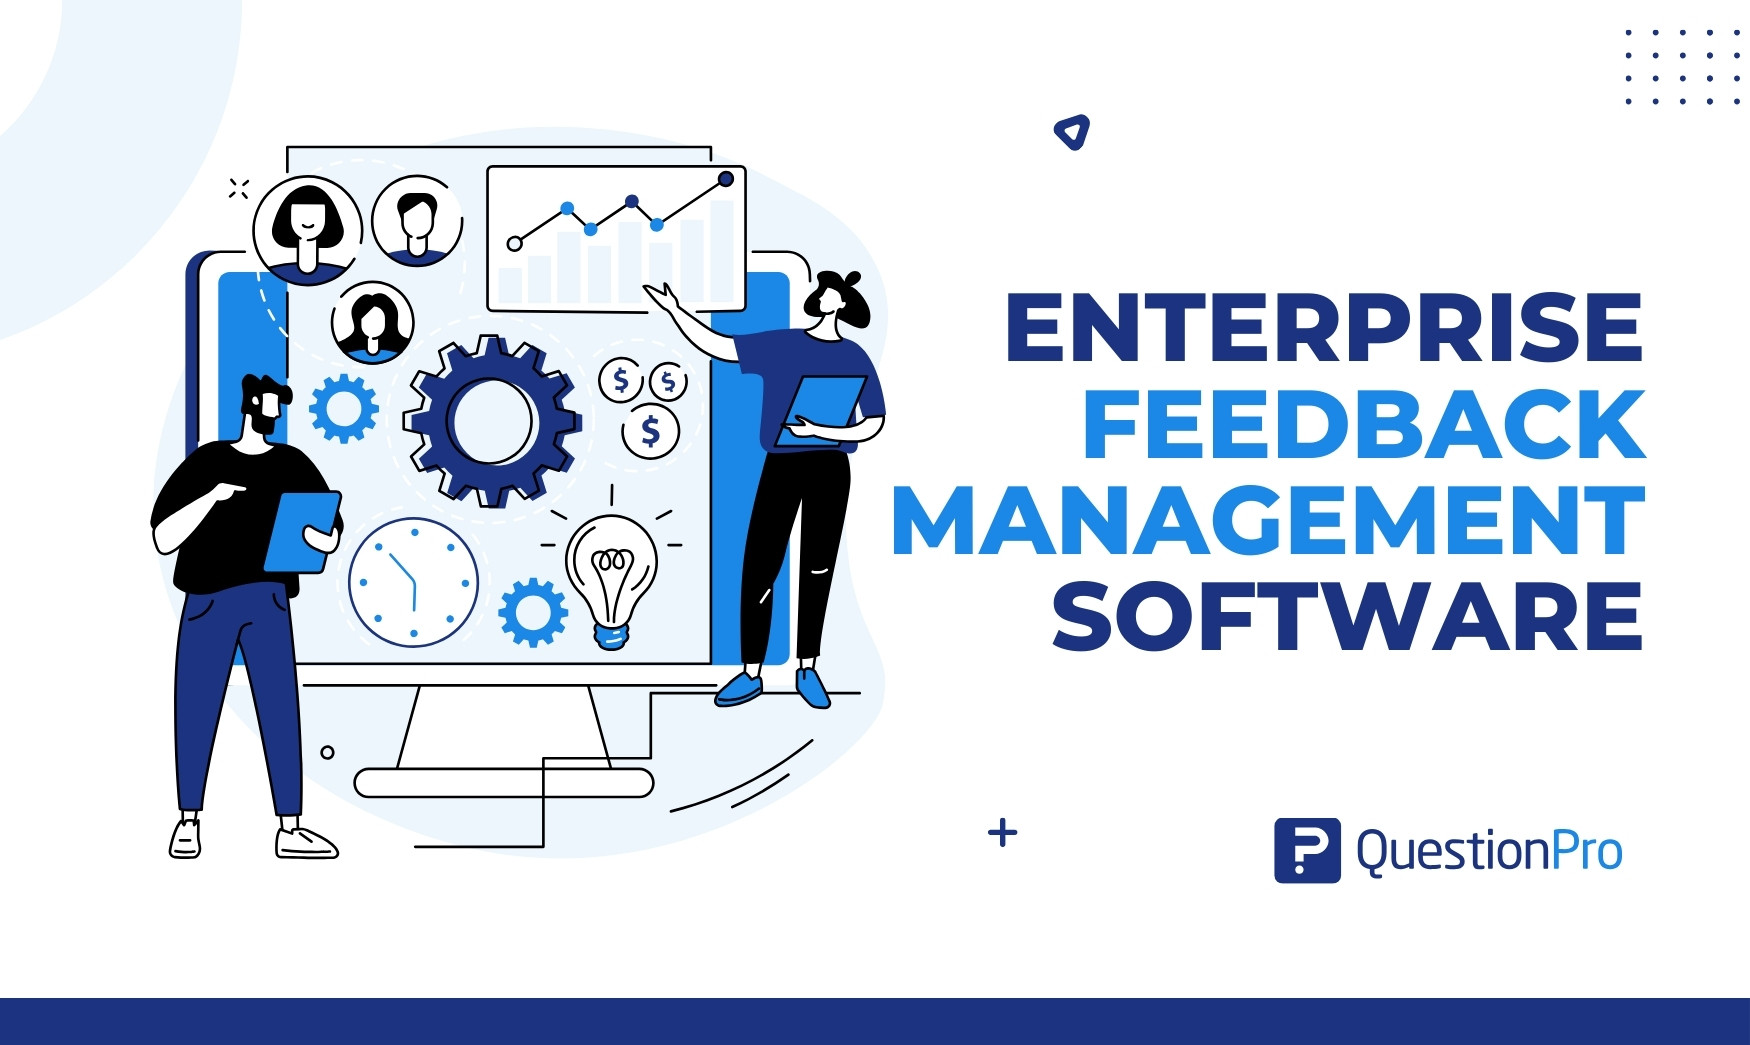 Enterprise Feedback Management software